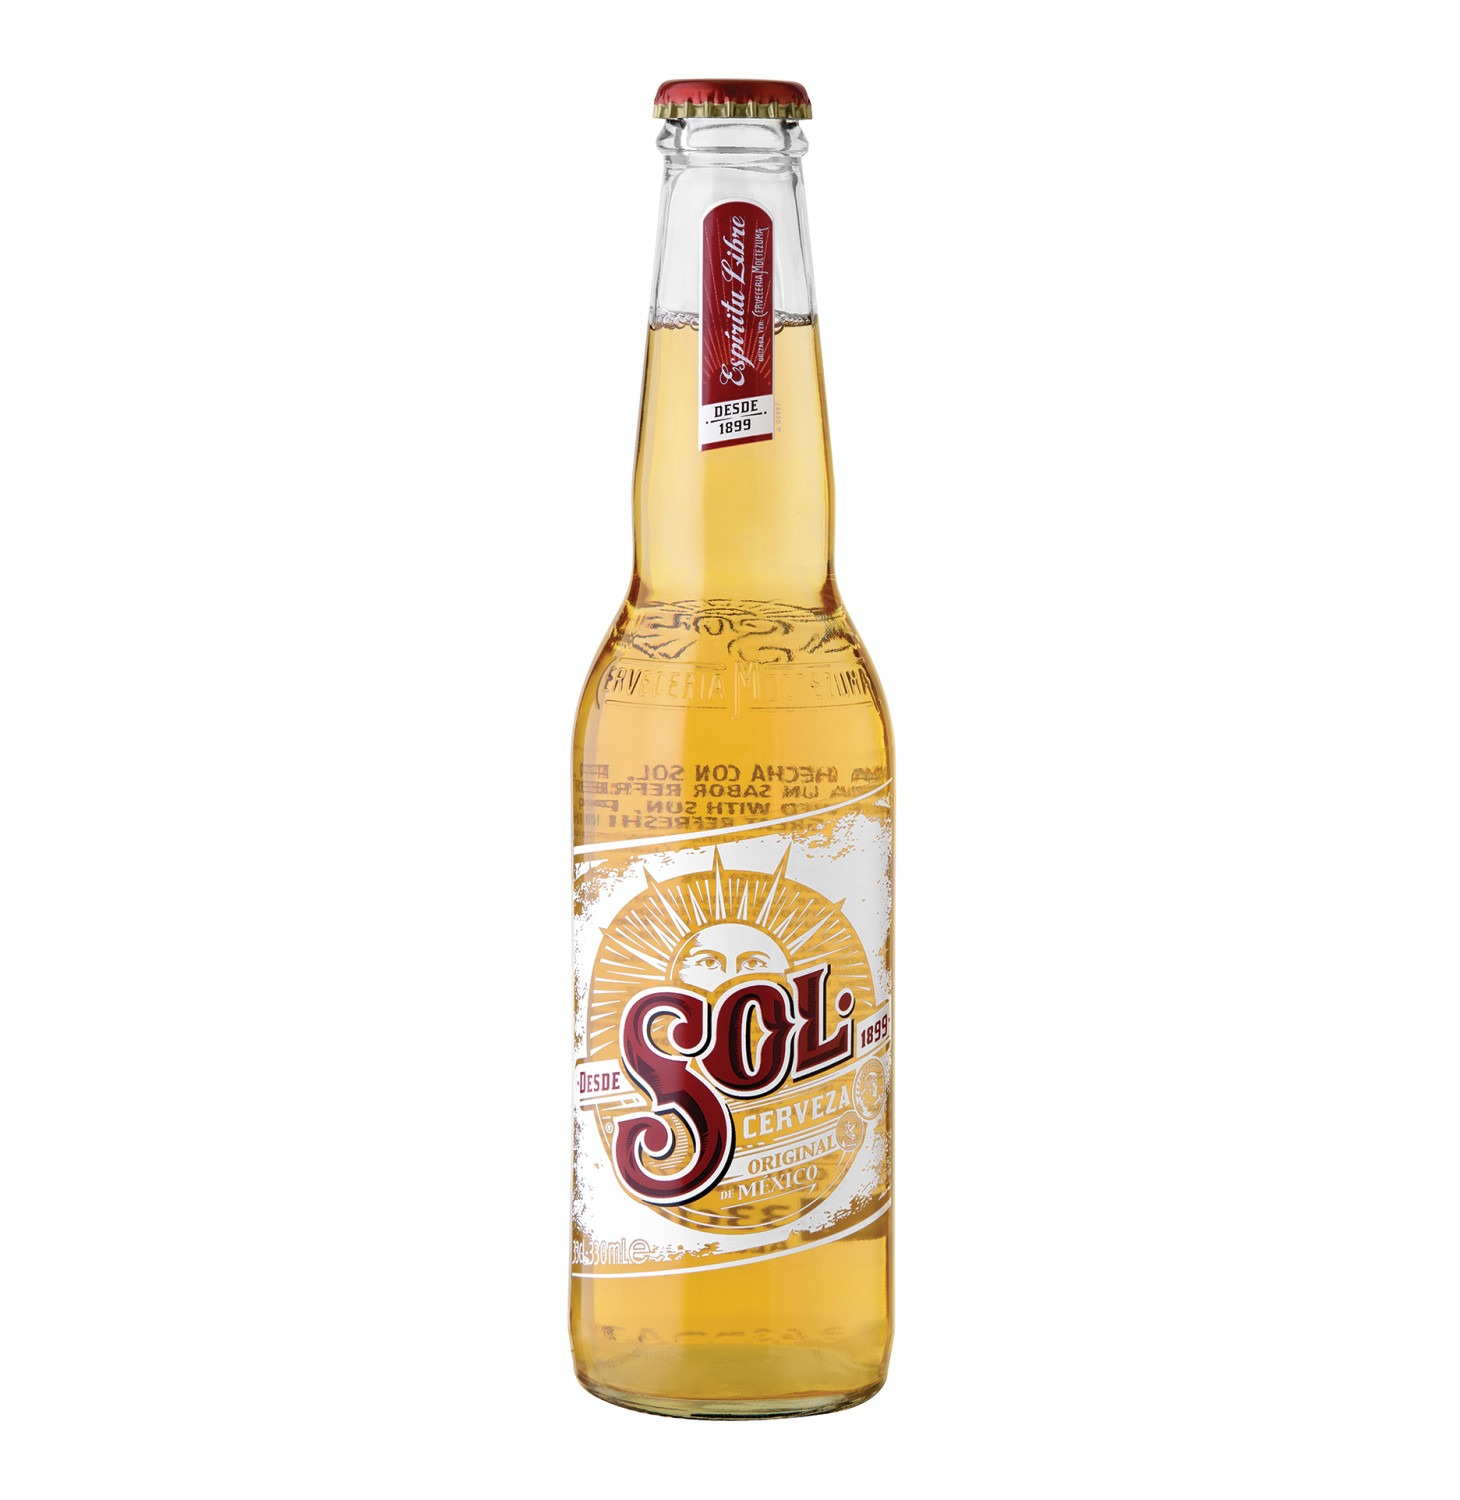 sol-cerveza-mexican-import-lager-beer-12-bottles-11-2-fl-oz-jay-c